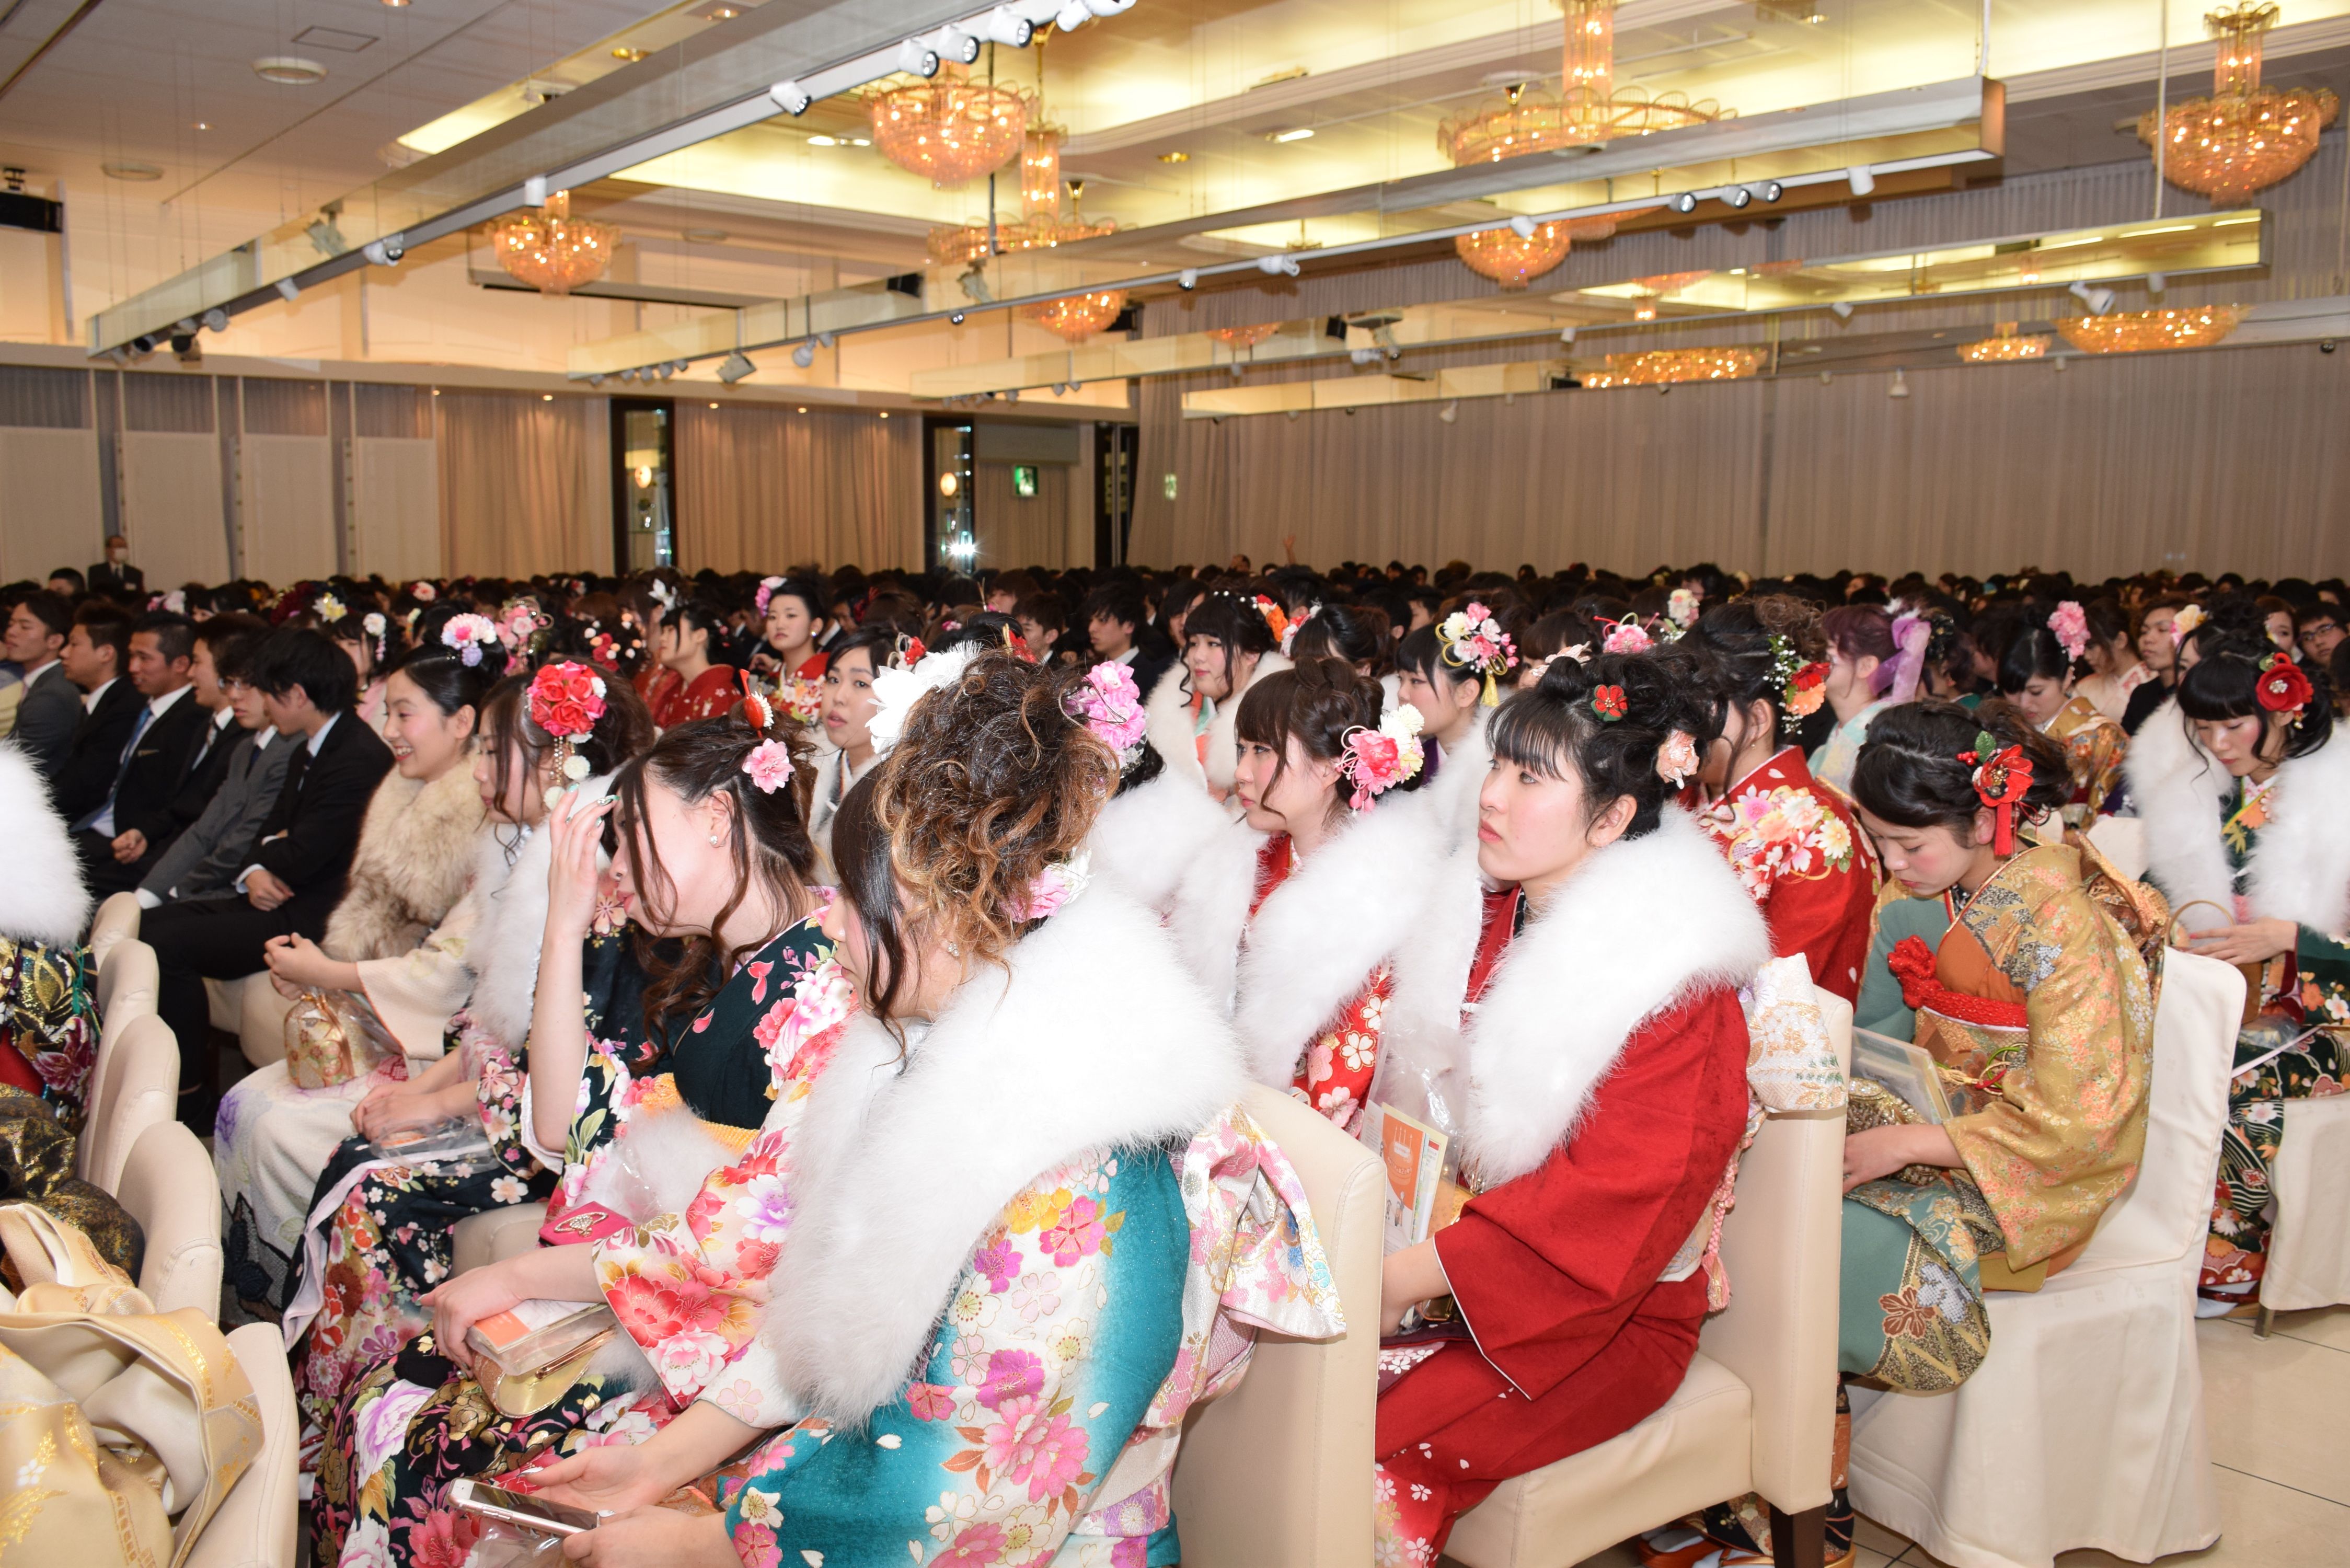 平成28年成人式・小名浜地区  多くの女性は豪華な振り袖姿(平成28年年1月 いわき市撮影)